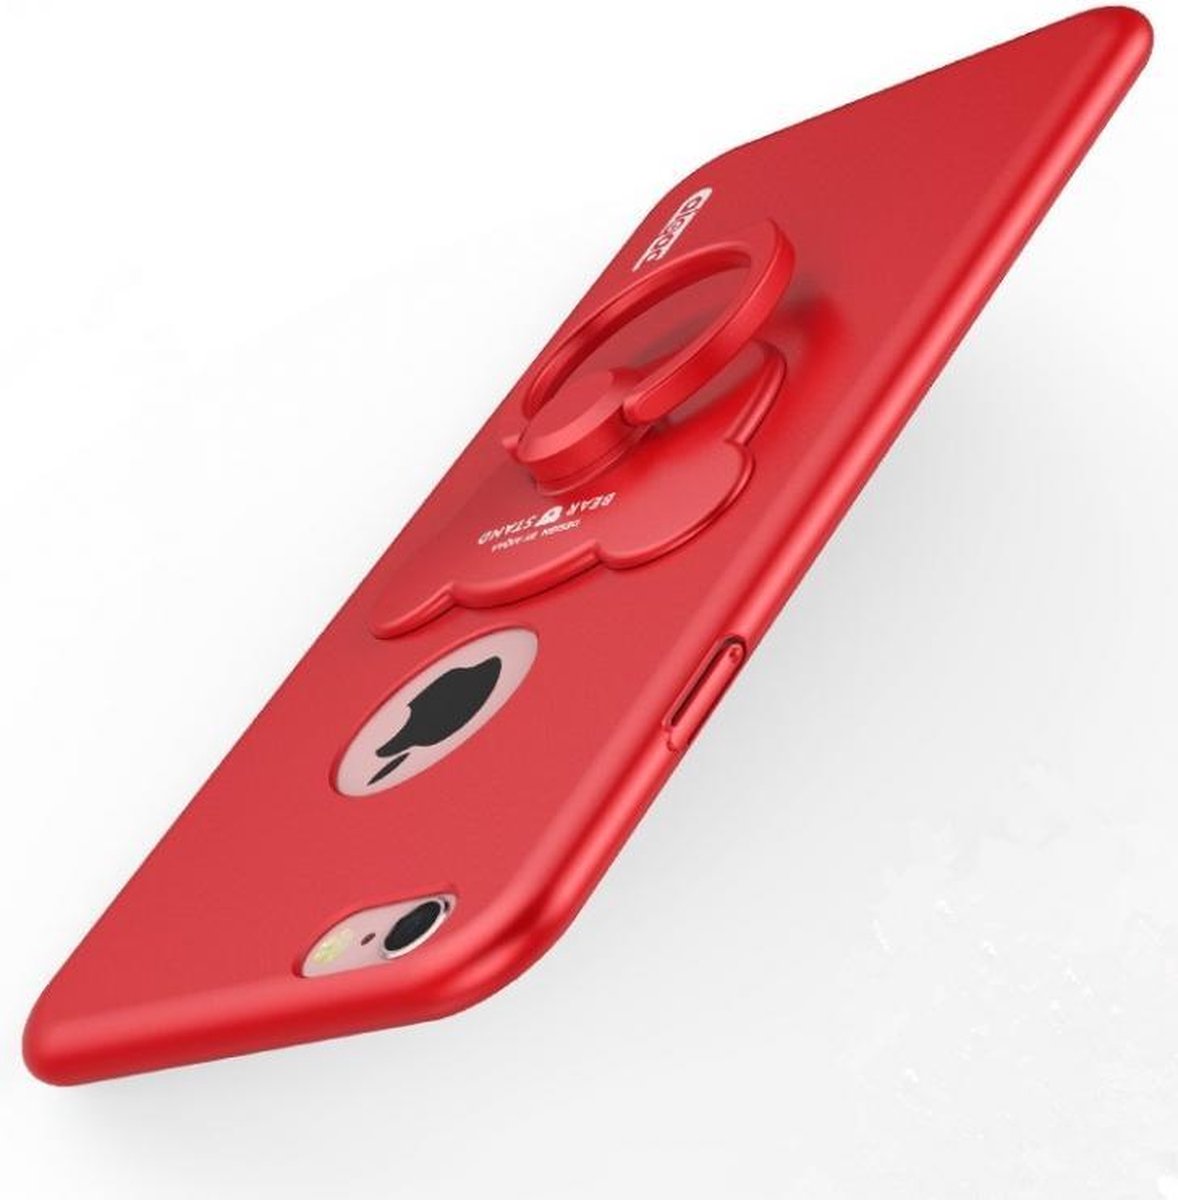 Rode Hardcase Hoesje met Ring voor iPhone 6 Plus